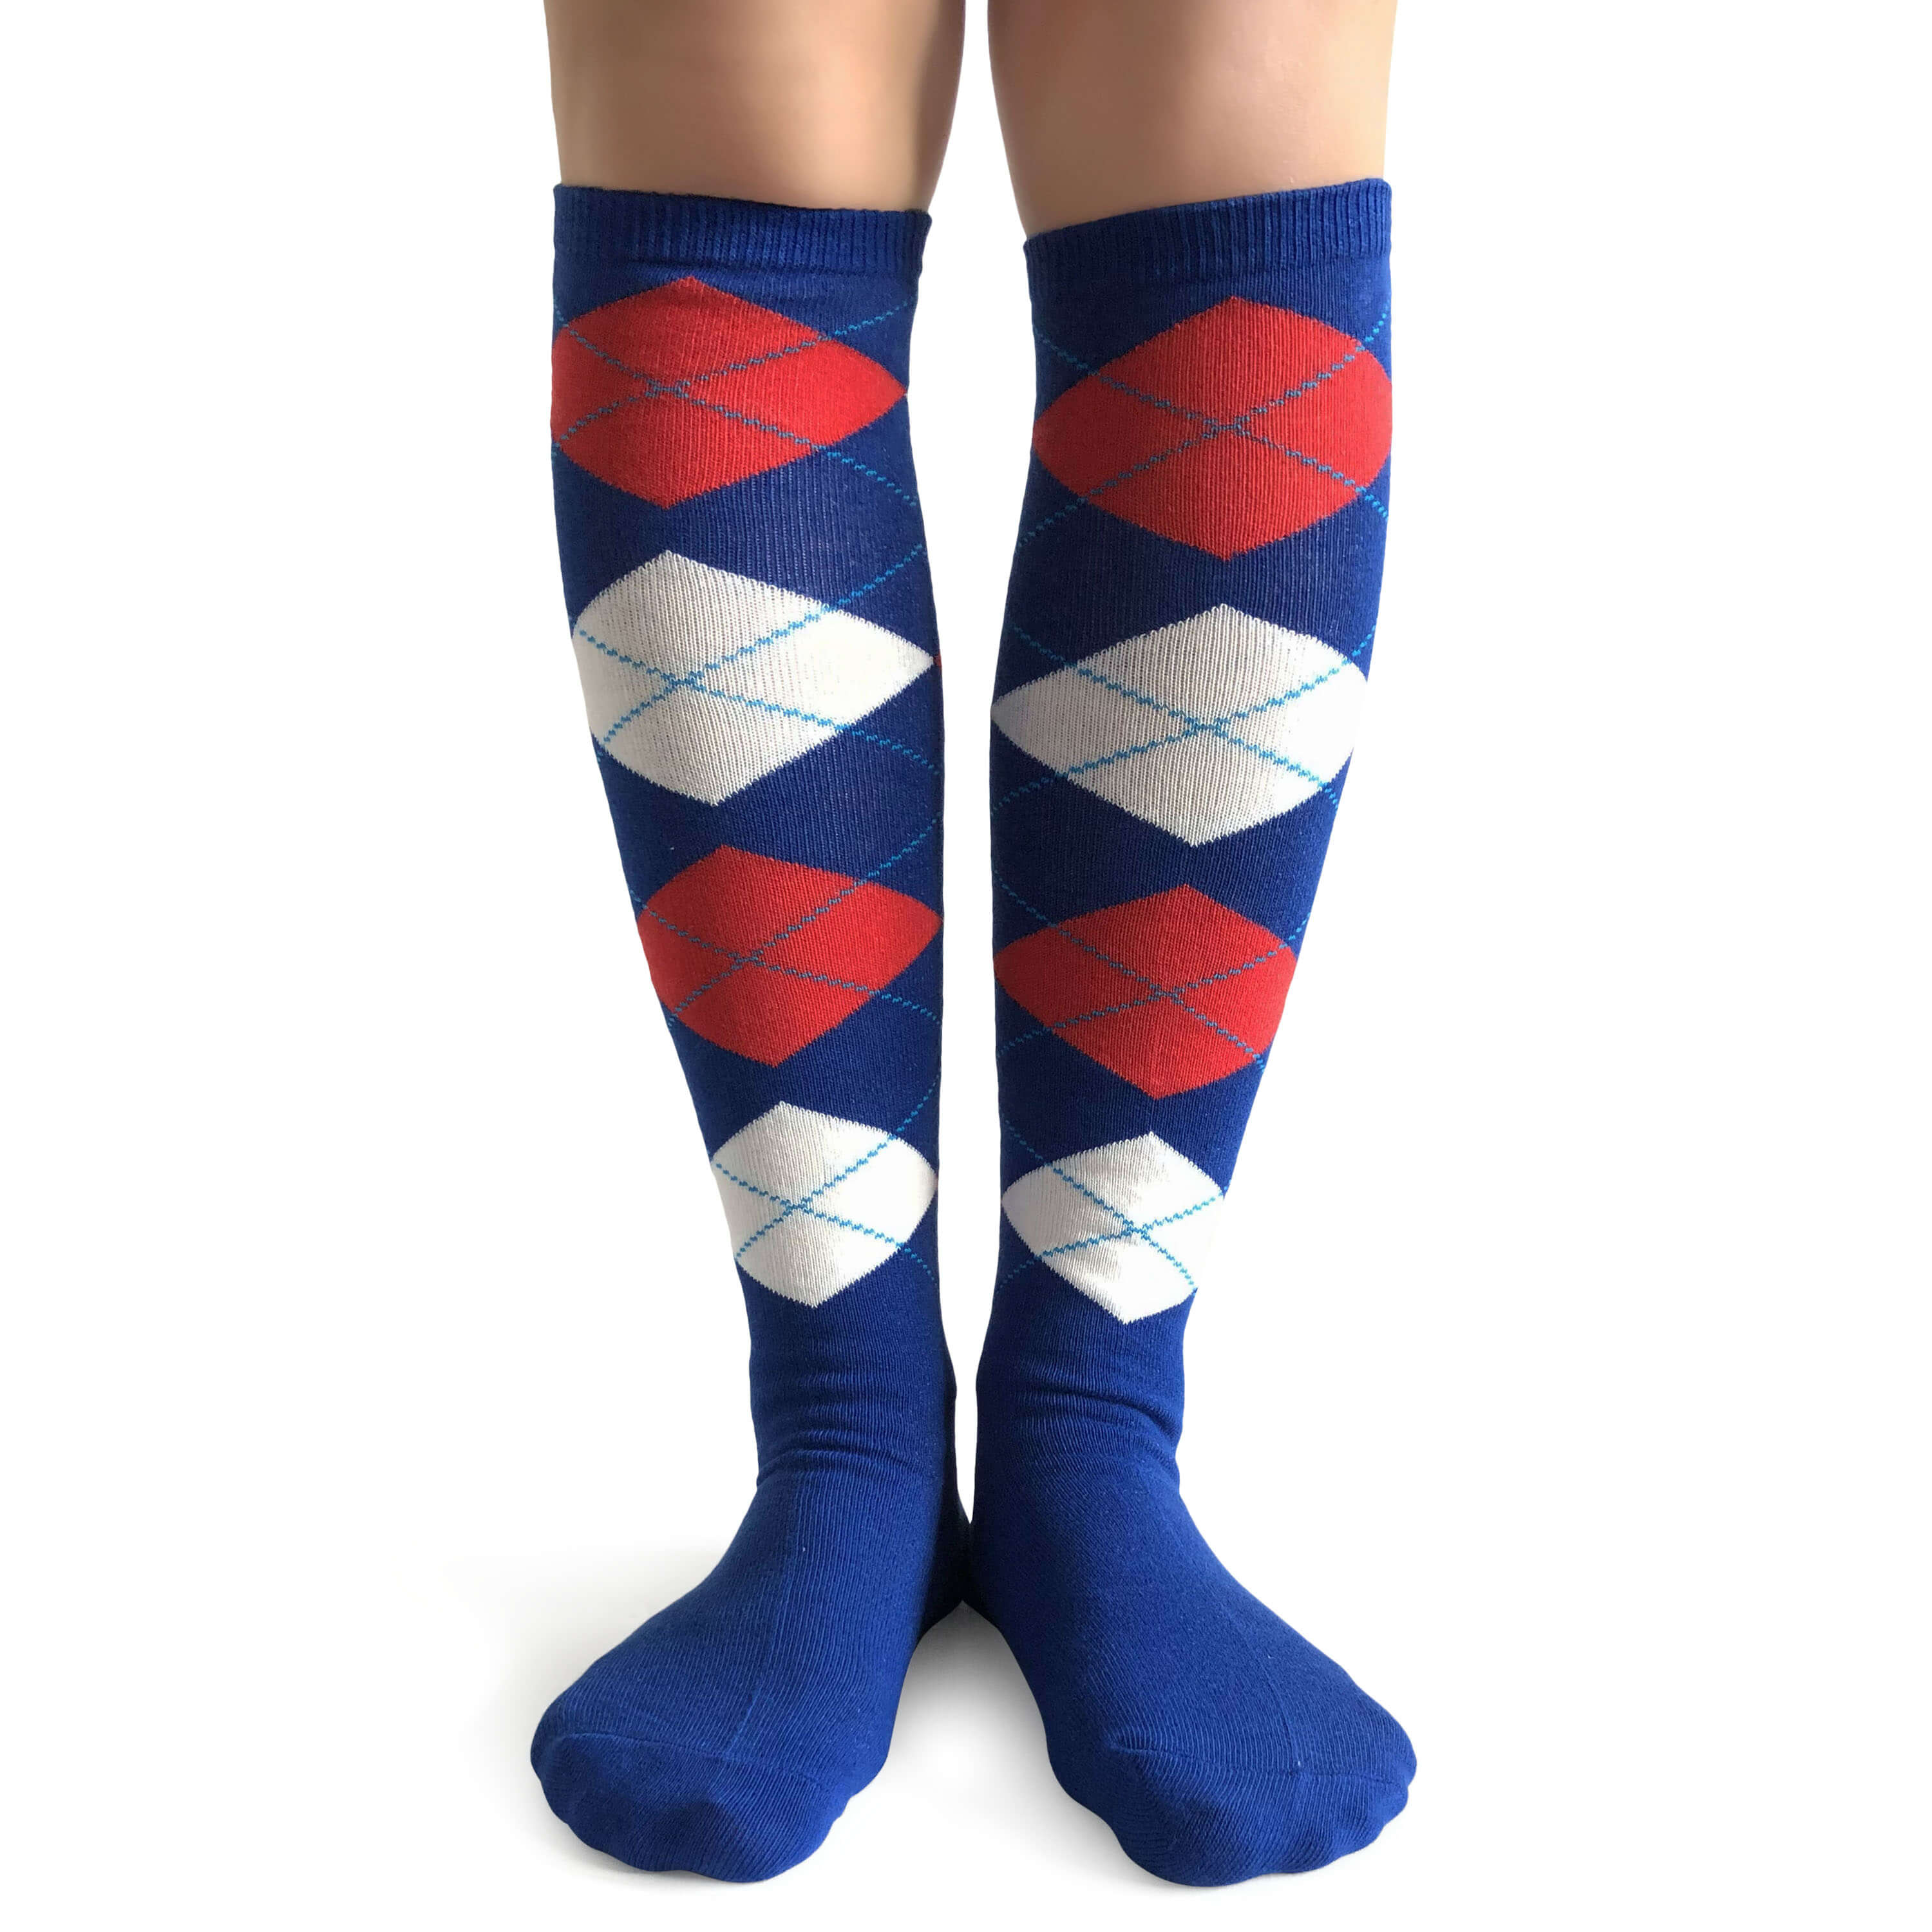 Womens Socks & Stockings : Groomsmen Socks Gift, Argyle Socks For Men ...